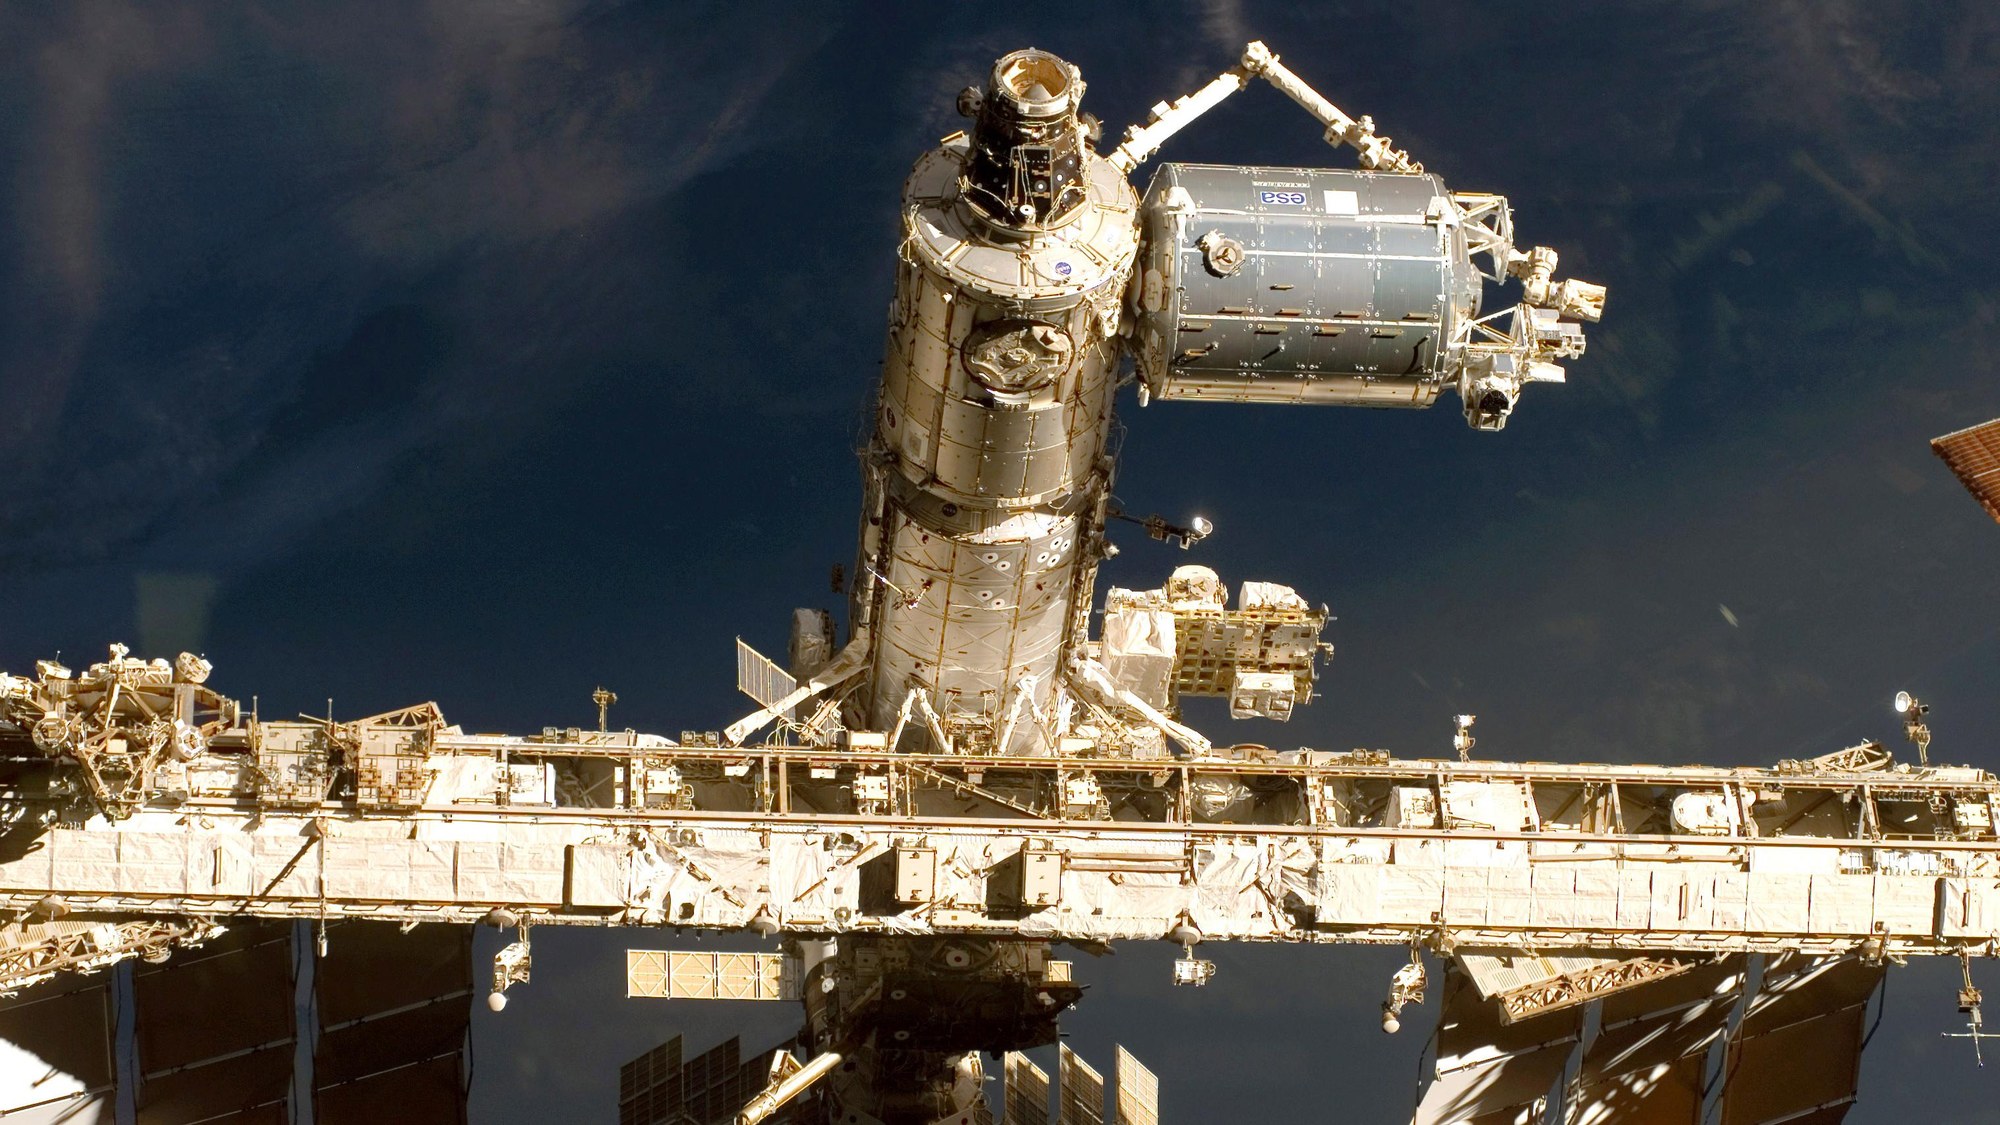 Das europäische Weltraumlabor Columbus ist Teil der ISS